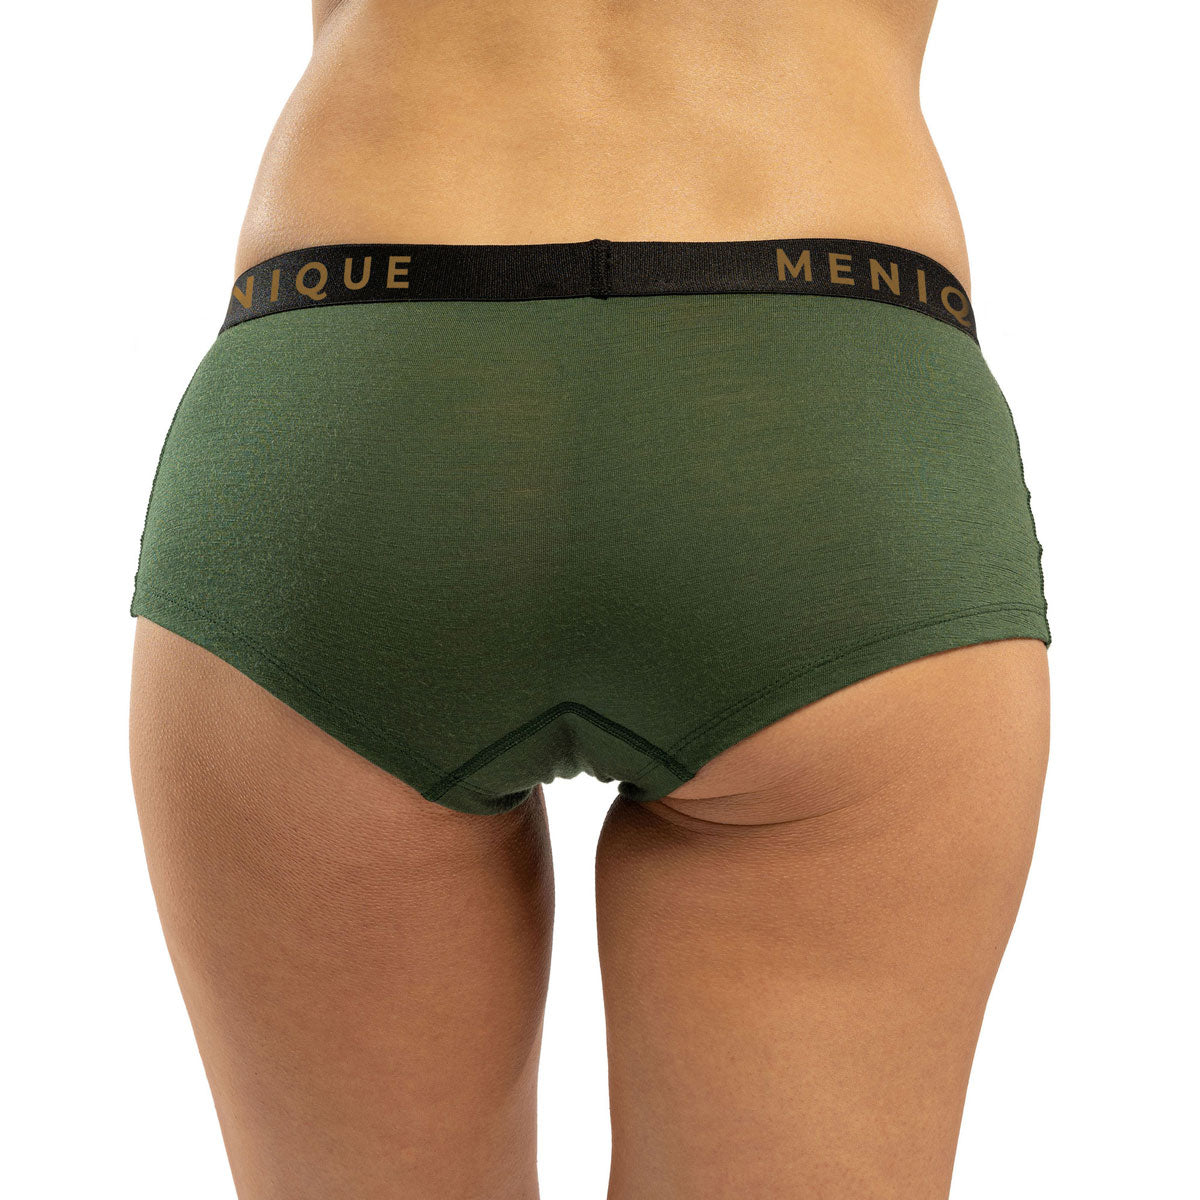 MENIQUE 100% Merino Wool Womens Boxer Shorts Dark Green